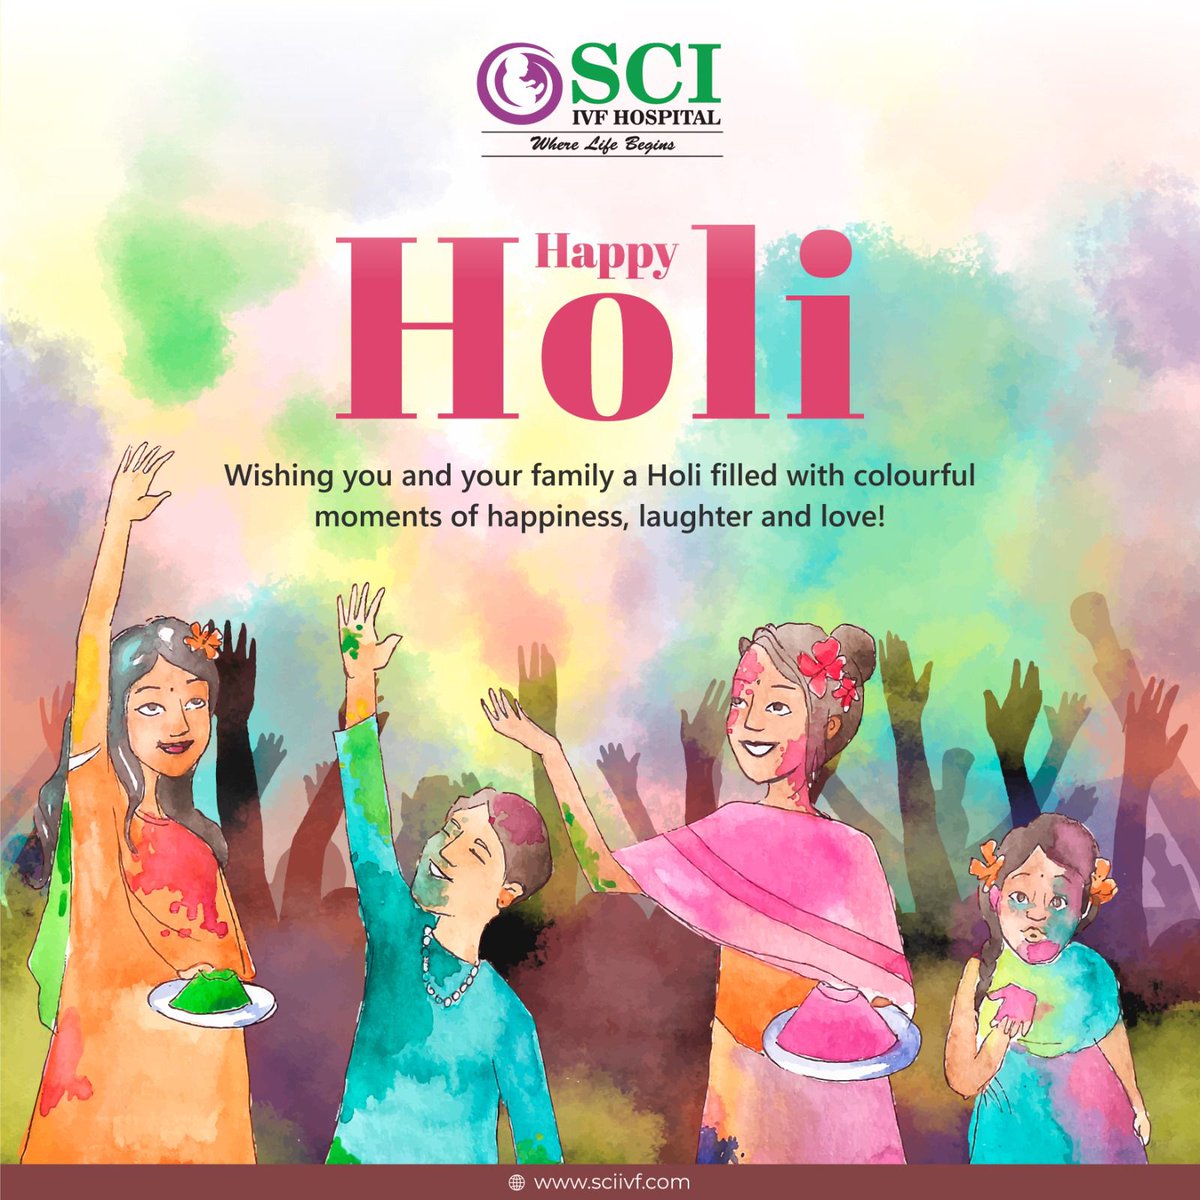 Wishing you all a joyous Holi filled with sweet moments to cherish forever. Happy Holi! #Holi #HappyHoli #FestivalOfColors #HoliCelebration #Holi2024 #ColorfulCelebration #HoliFun #SCIIVFHospital